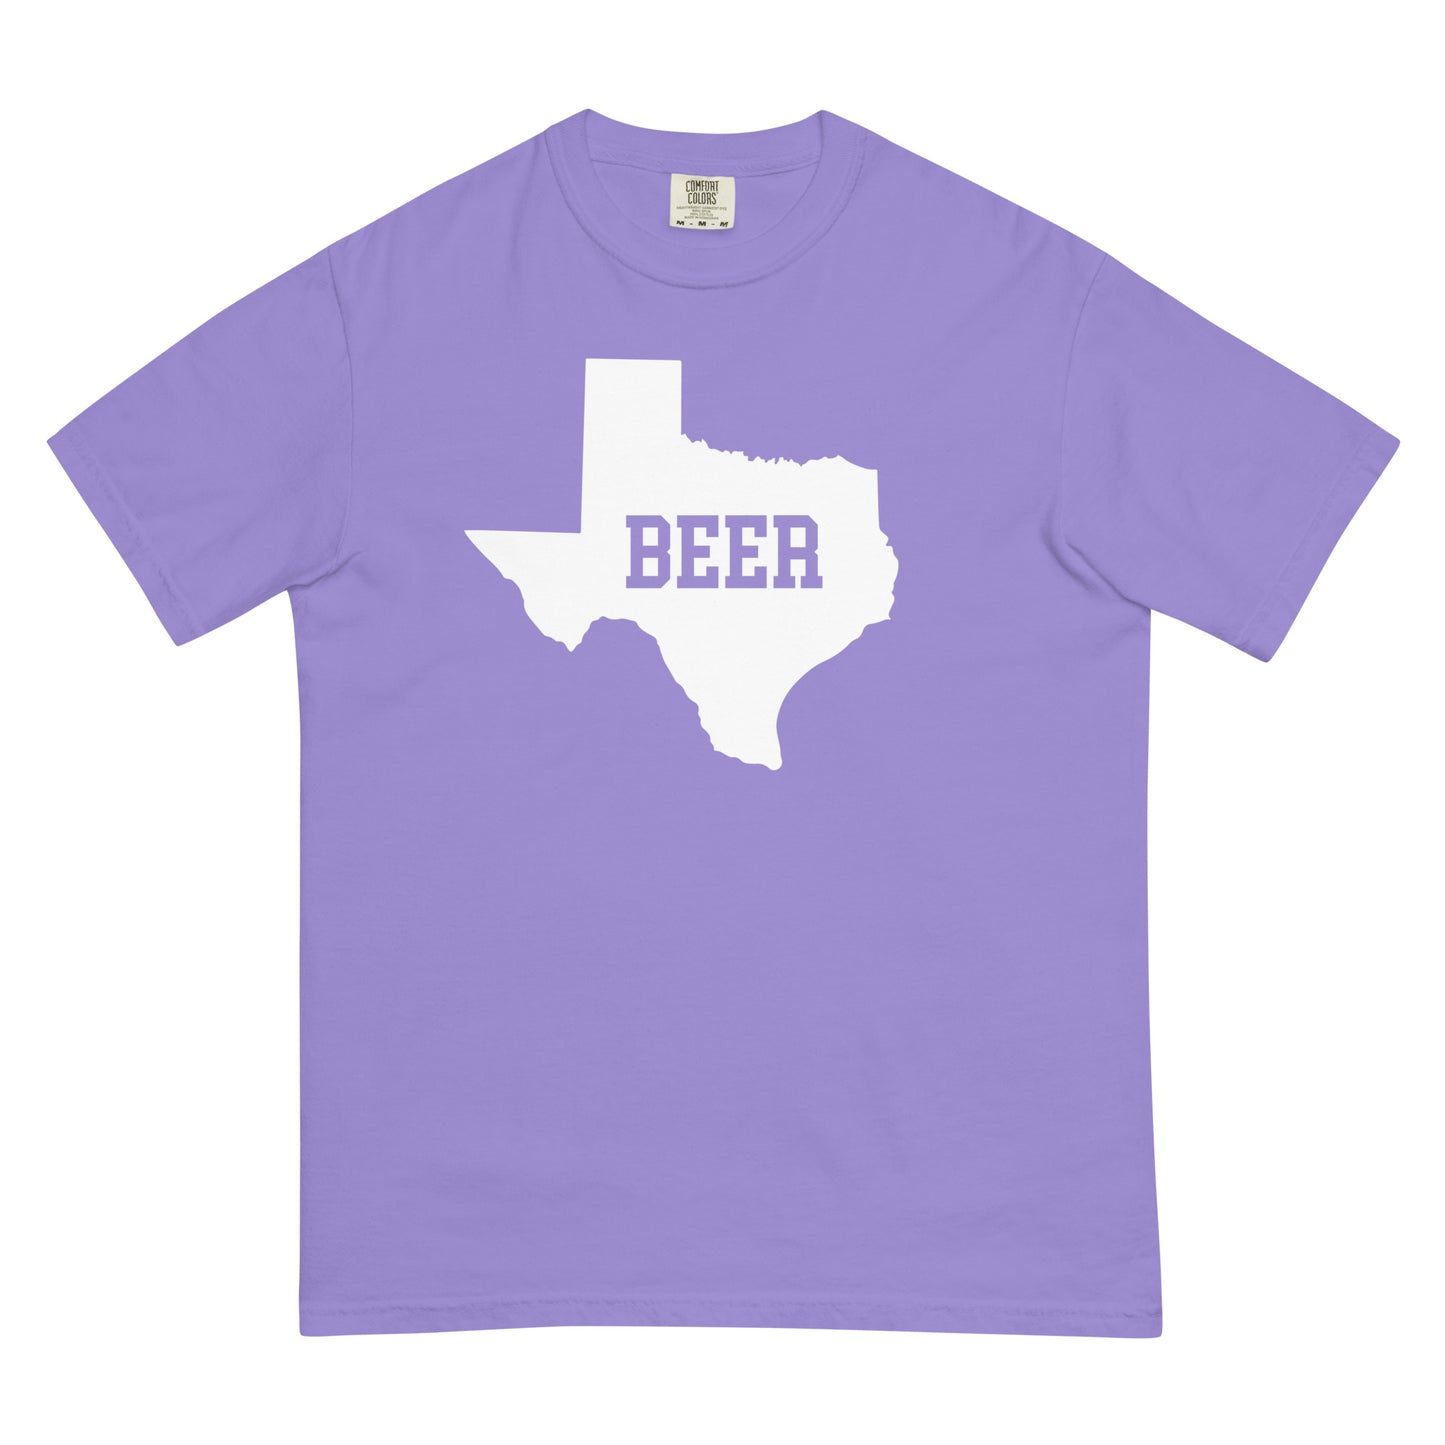 Texas Beer